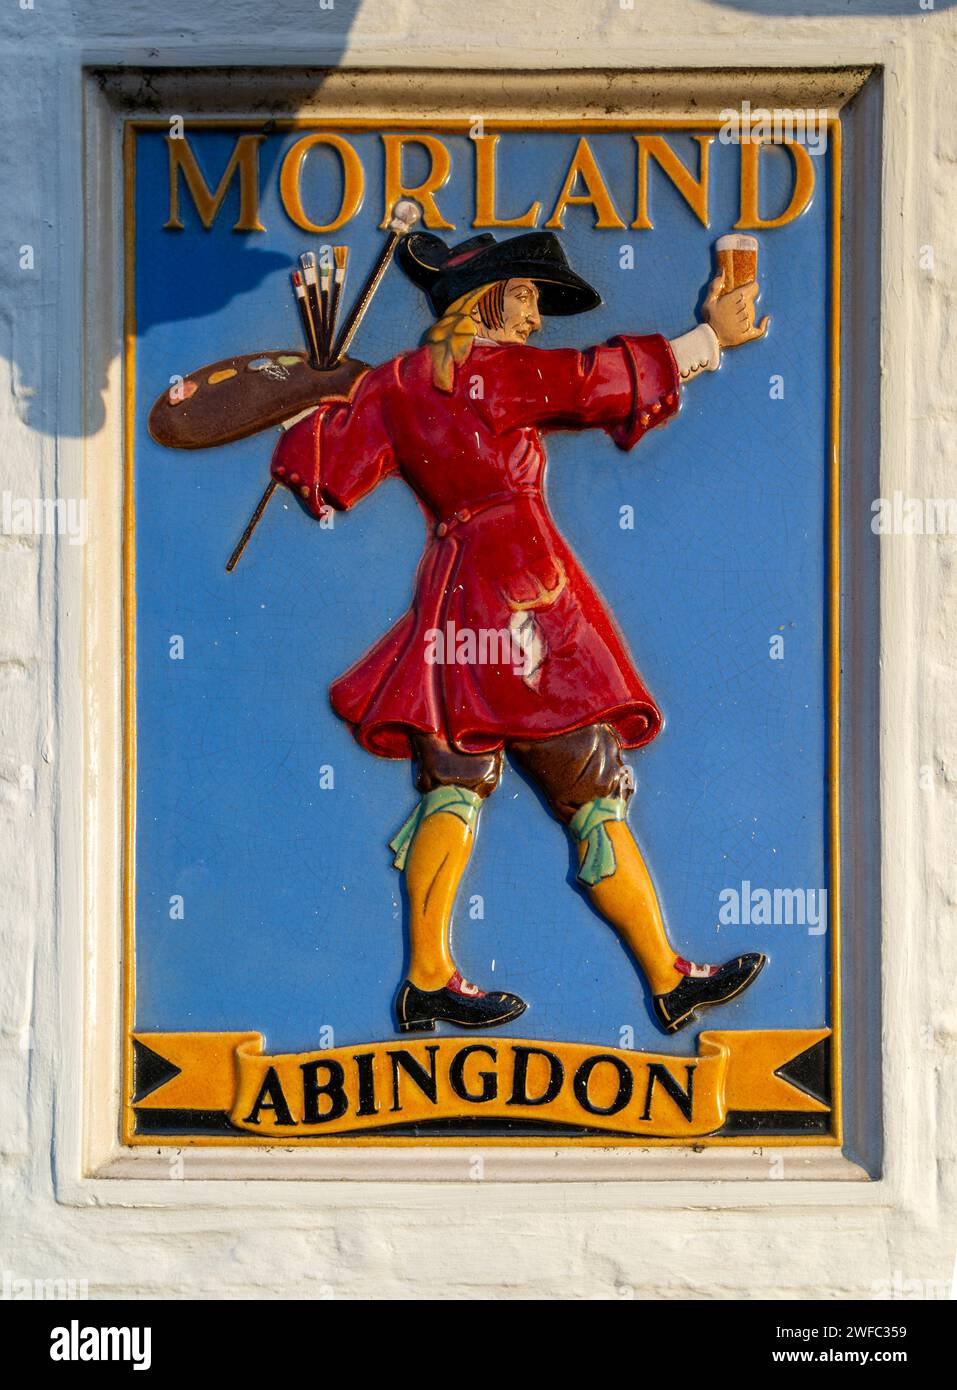 Vintage-Pub-Zeichen des Künstlers Morland Brewery Beer, Abingdon, Oxfordshire, England, Großbritannien Stockfoto